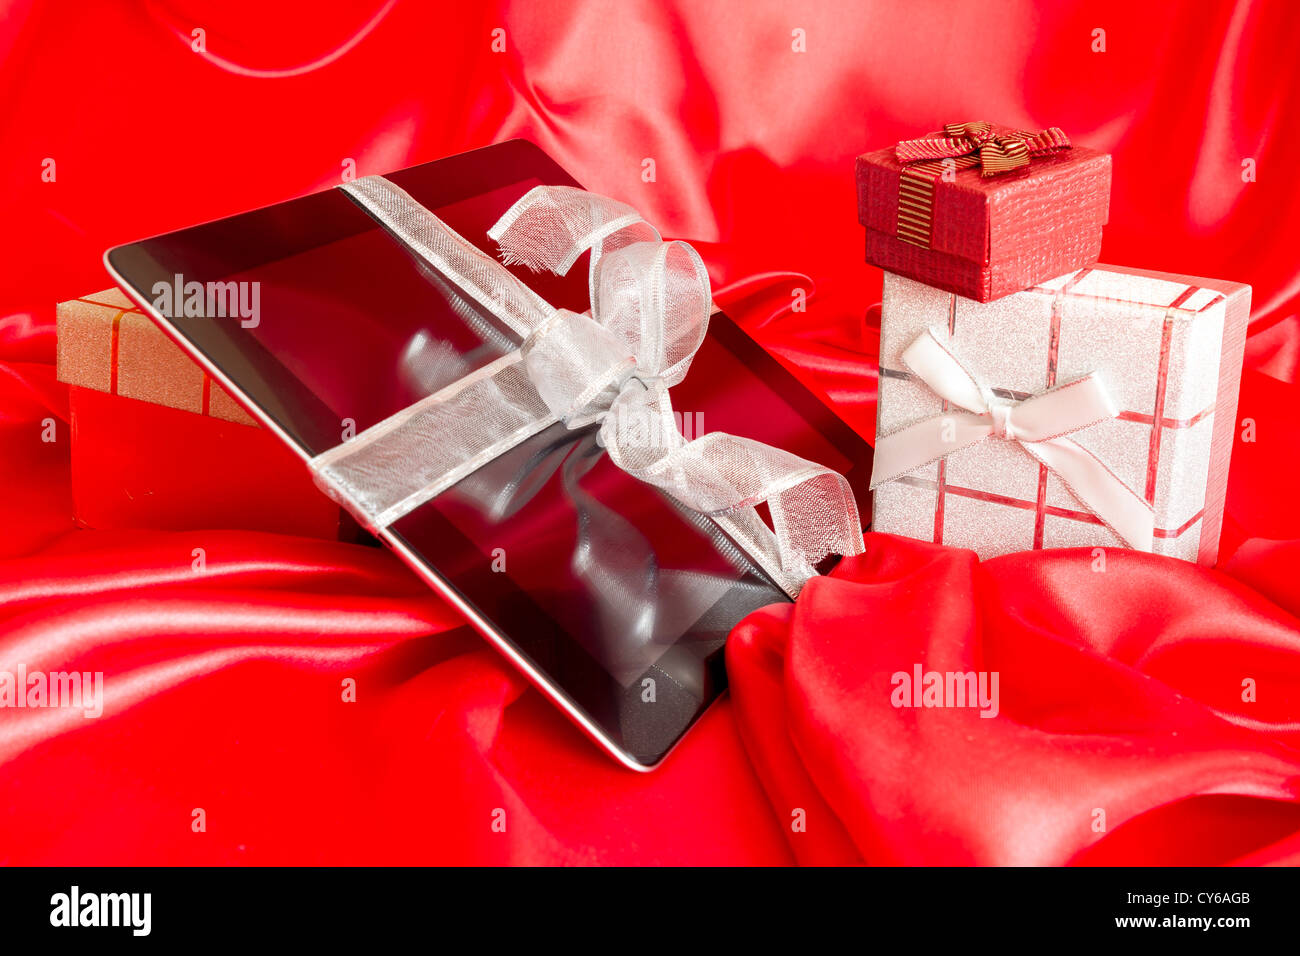 Digital-Tablette mit Weihnachtsgeschenk auf rotem Grund Stockfoto